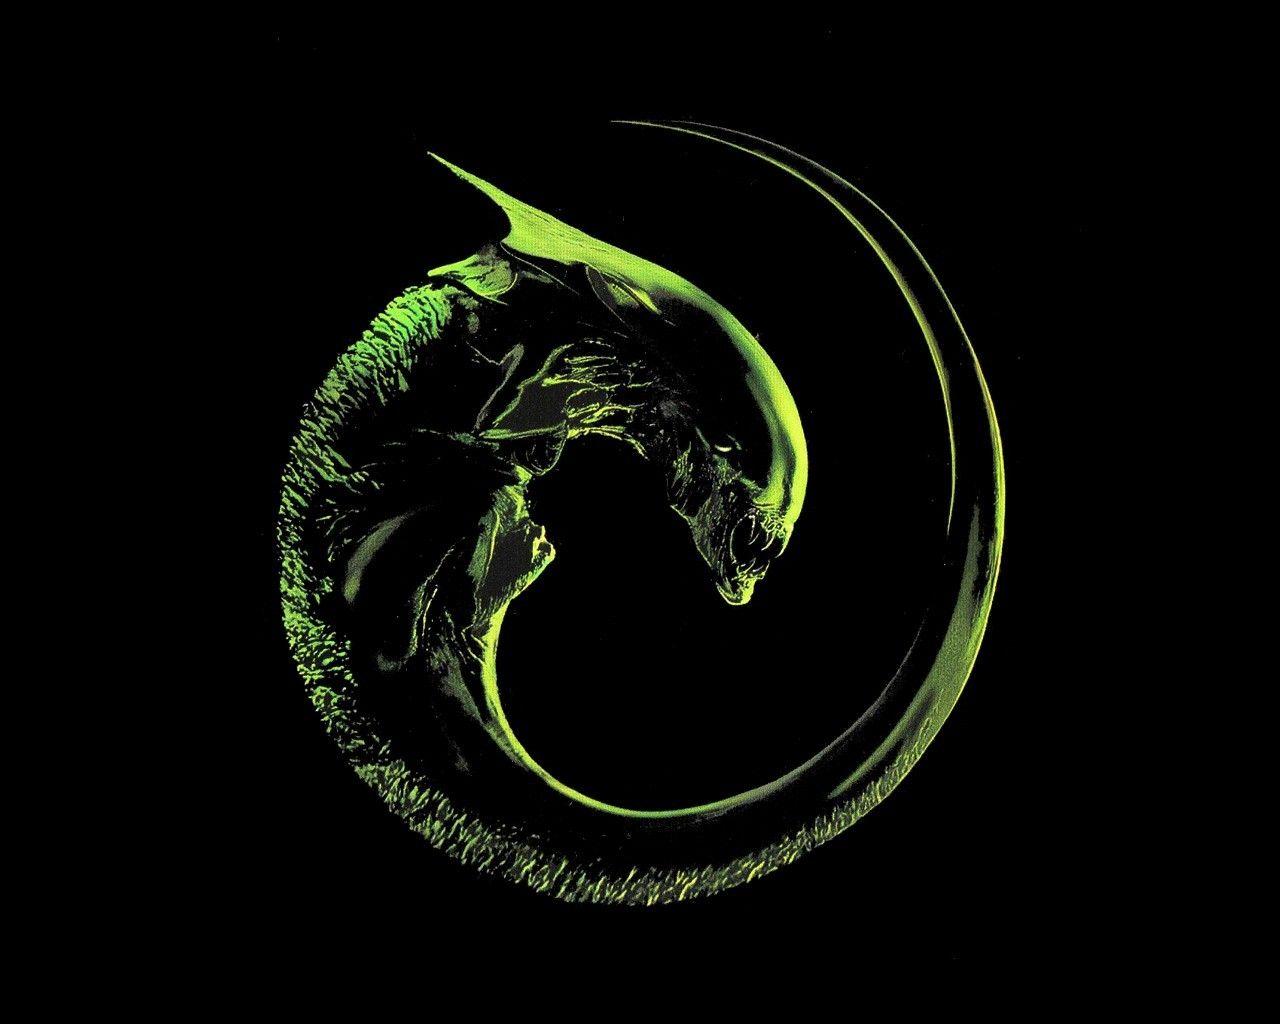 Alien Computer Logo - Wallpaper : illustration, spiral, logo, circle, Alien movie, aliens